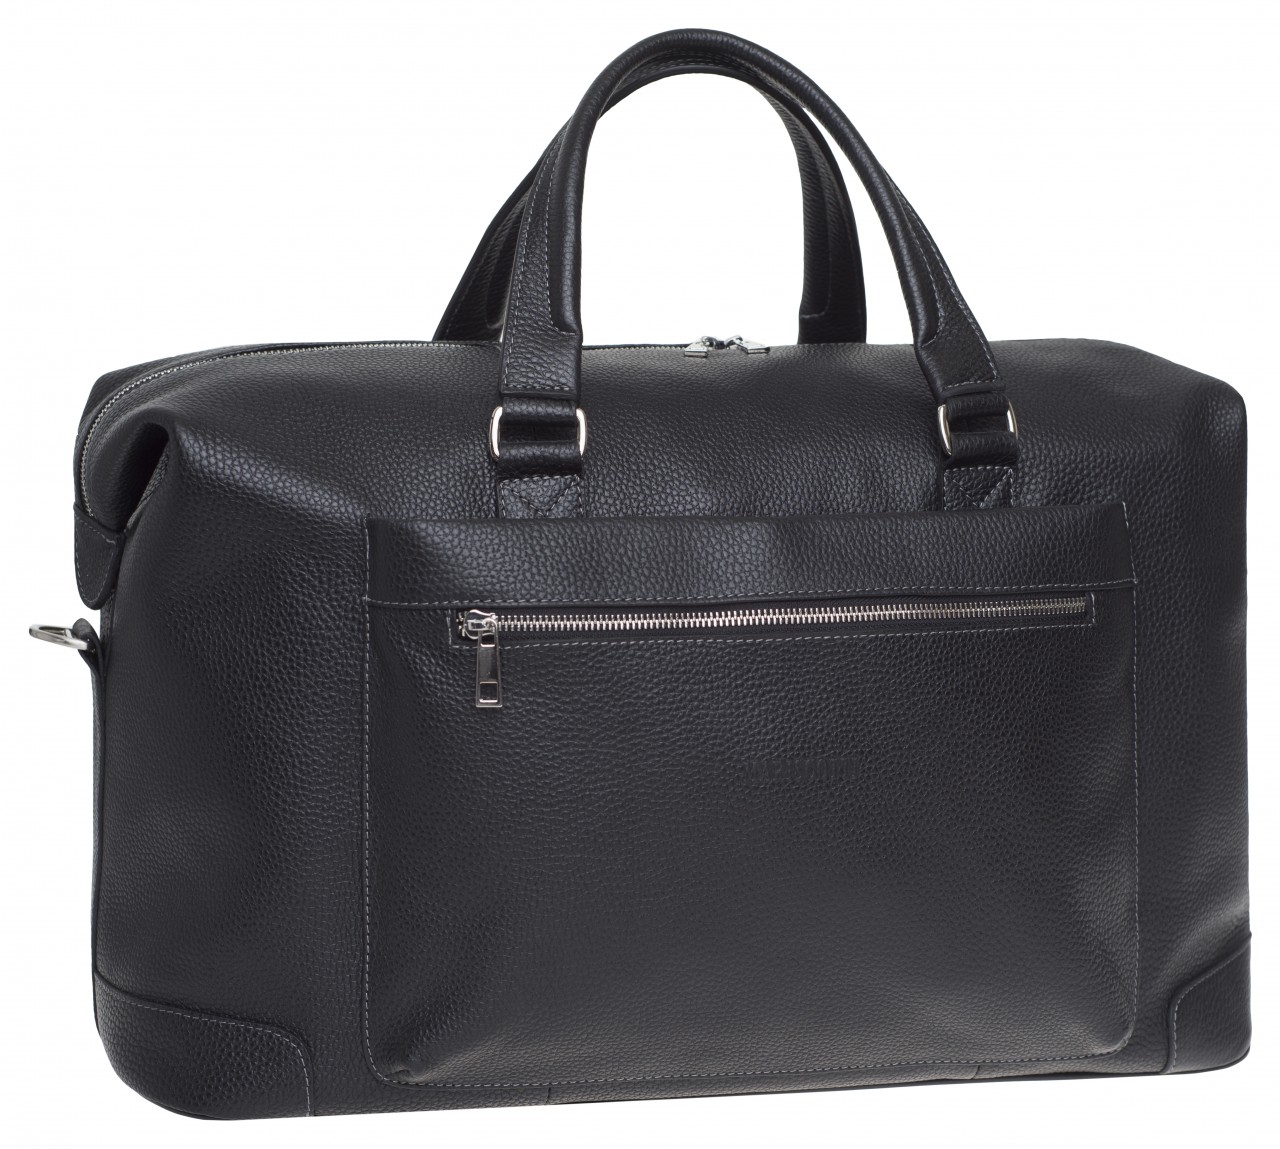 Дорожная сумка мужская Franchesco Mariscotti 6-416к черная, 28x55x24 см